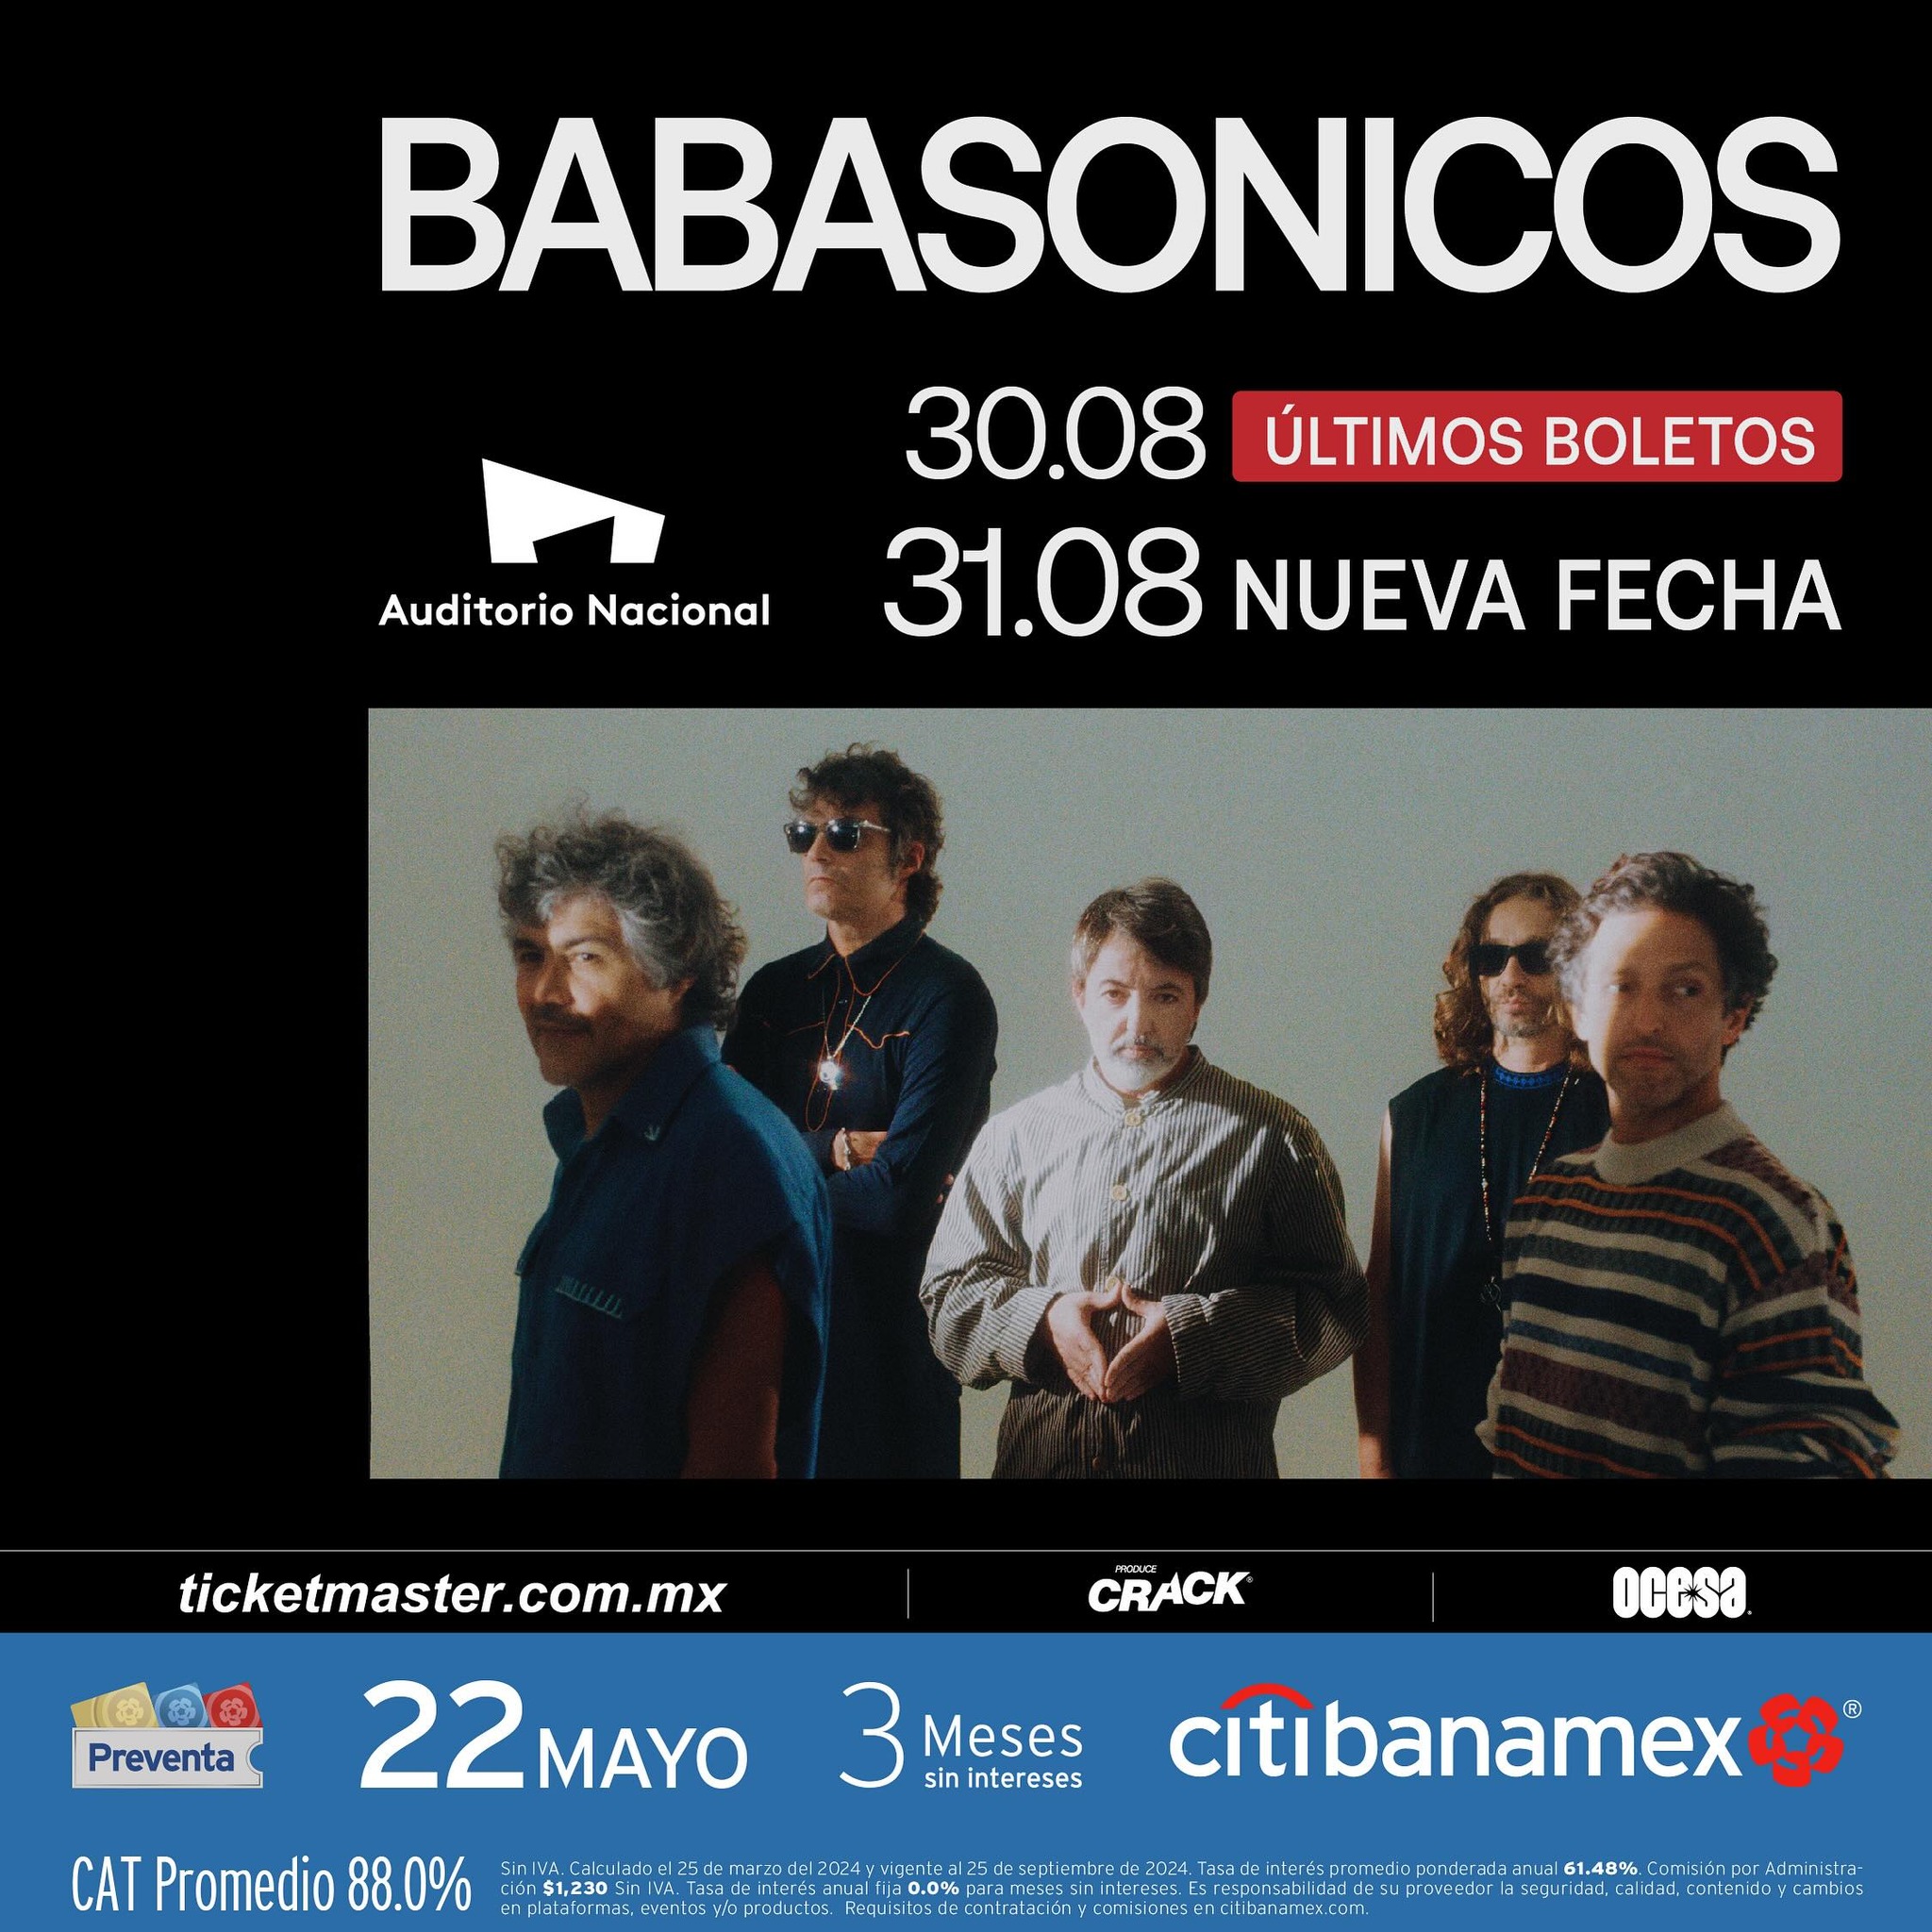 Babasonicos Nueva Fecha